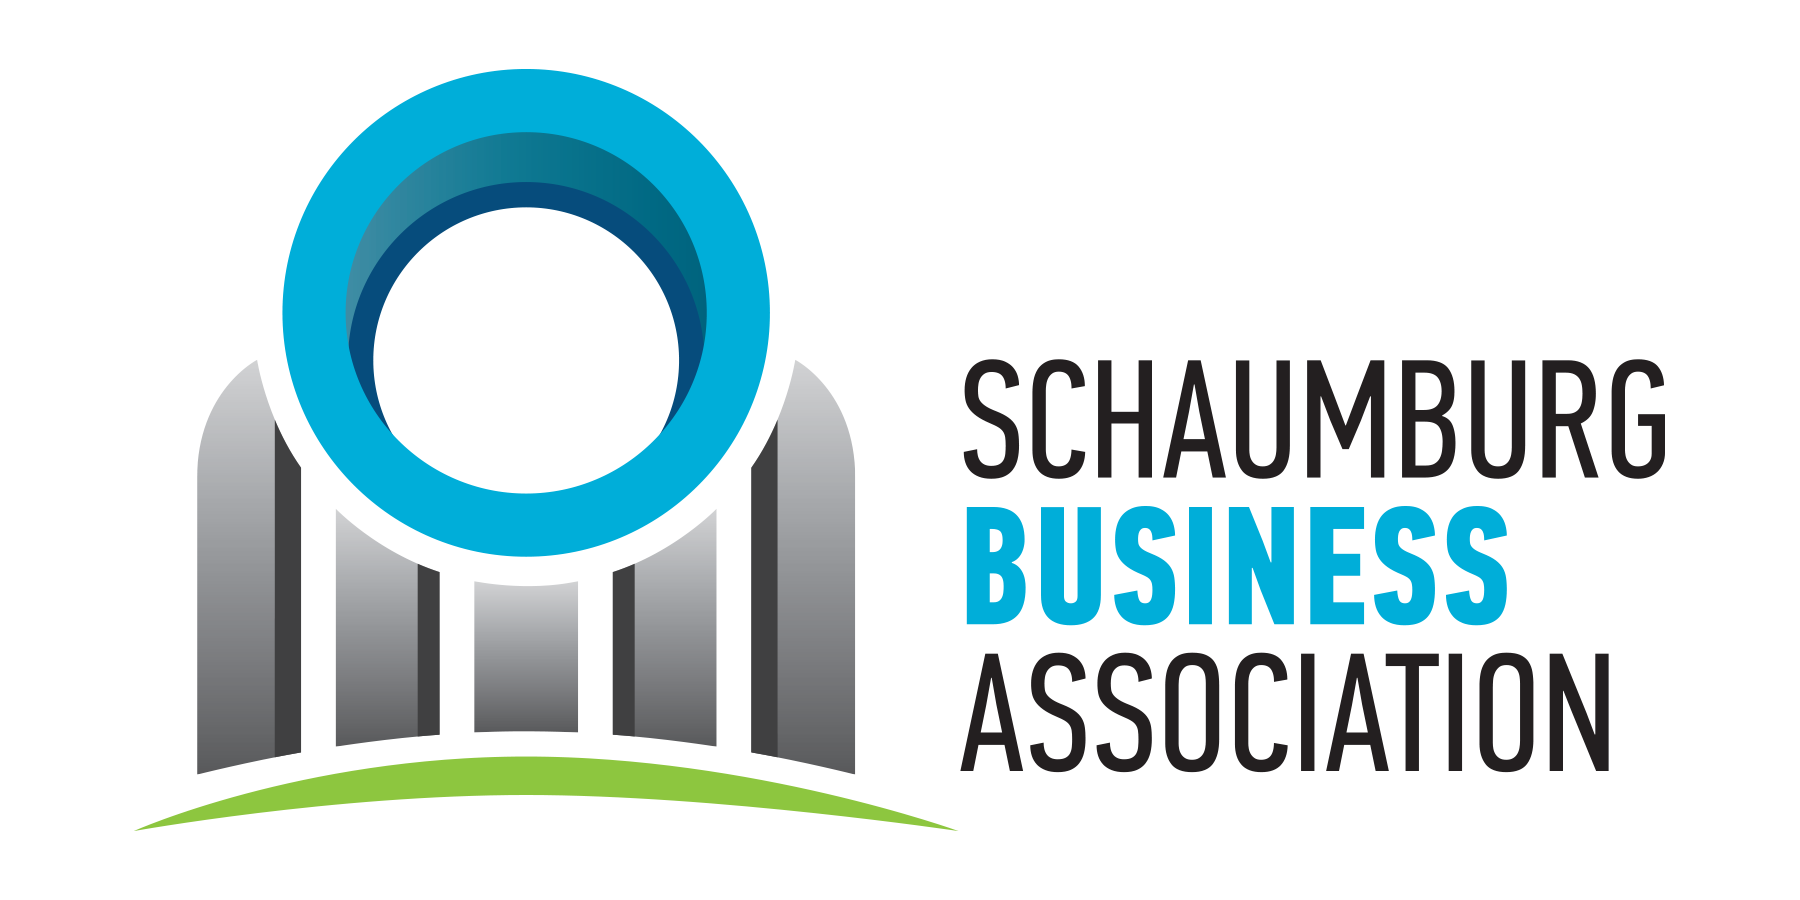 Schaumburg Business Association